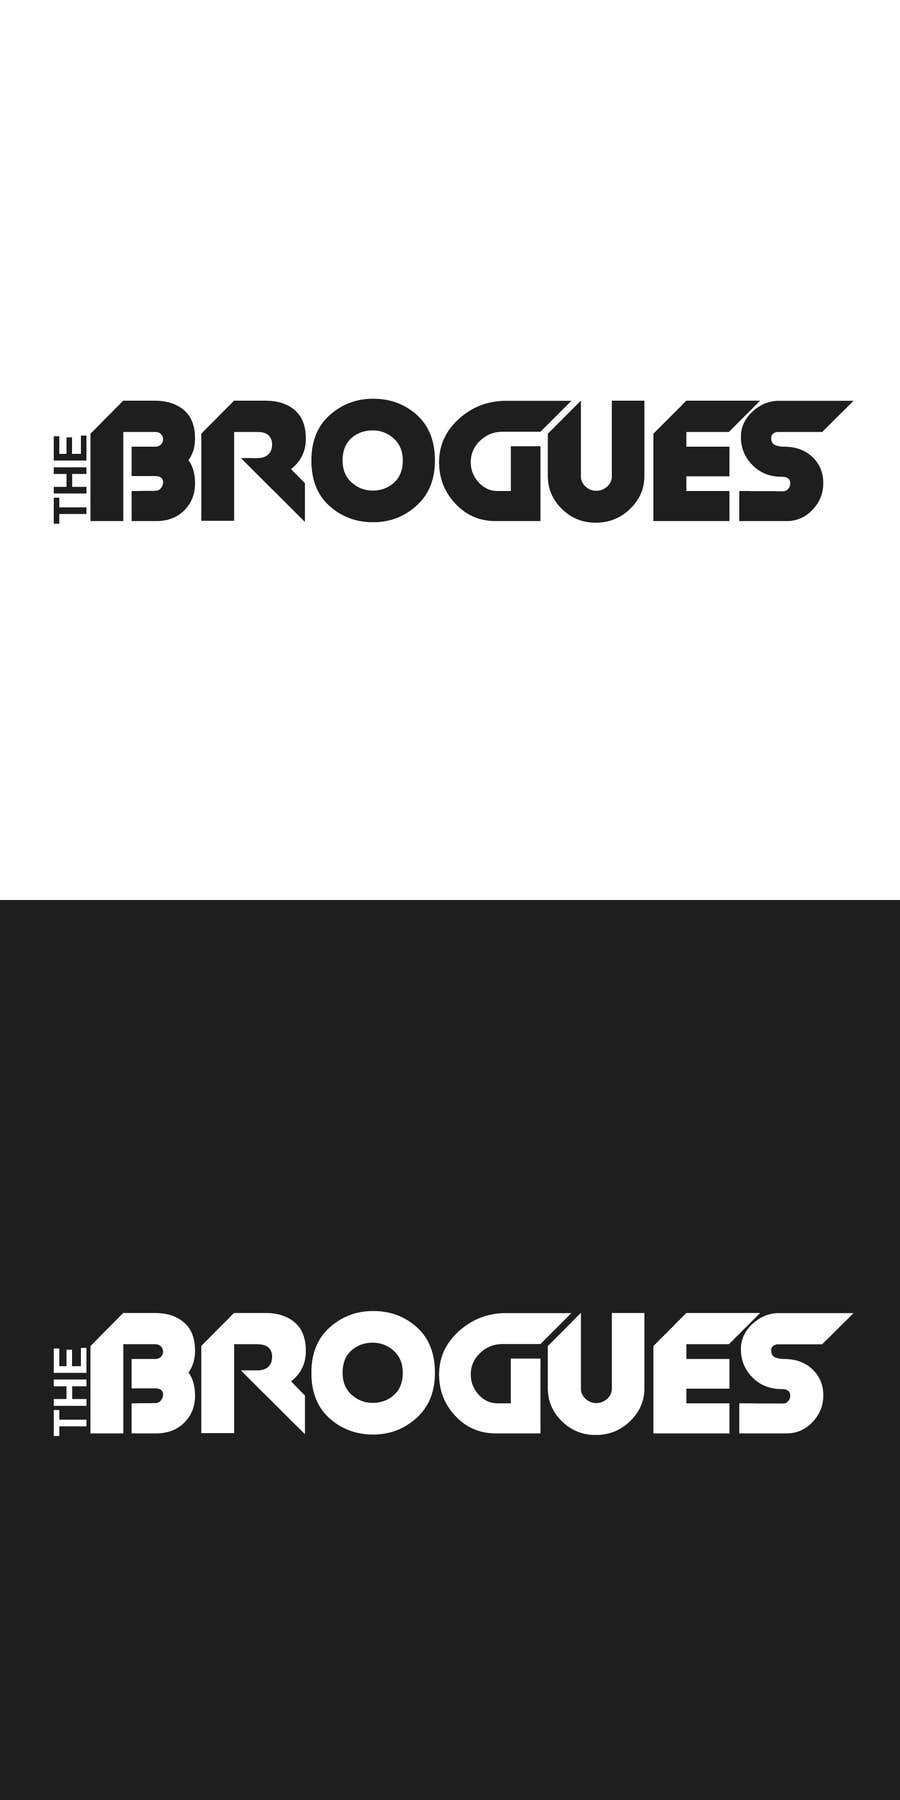 Kilpailutyö #18 kilpailussa                                                 Design a Logo for a band 'brogues'
                                            